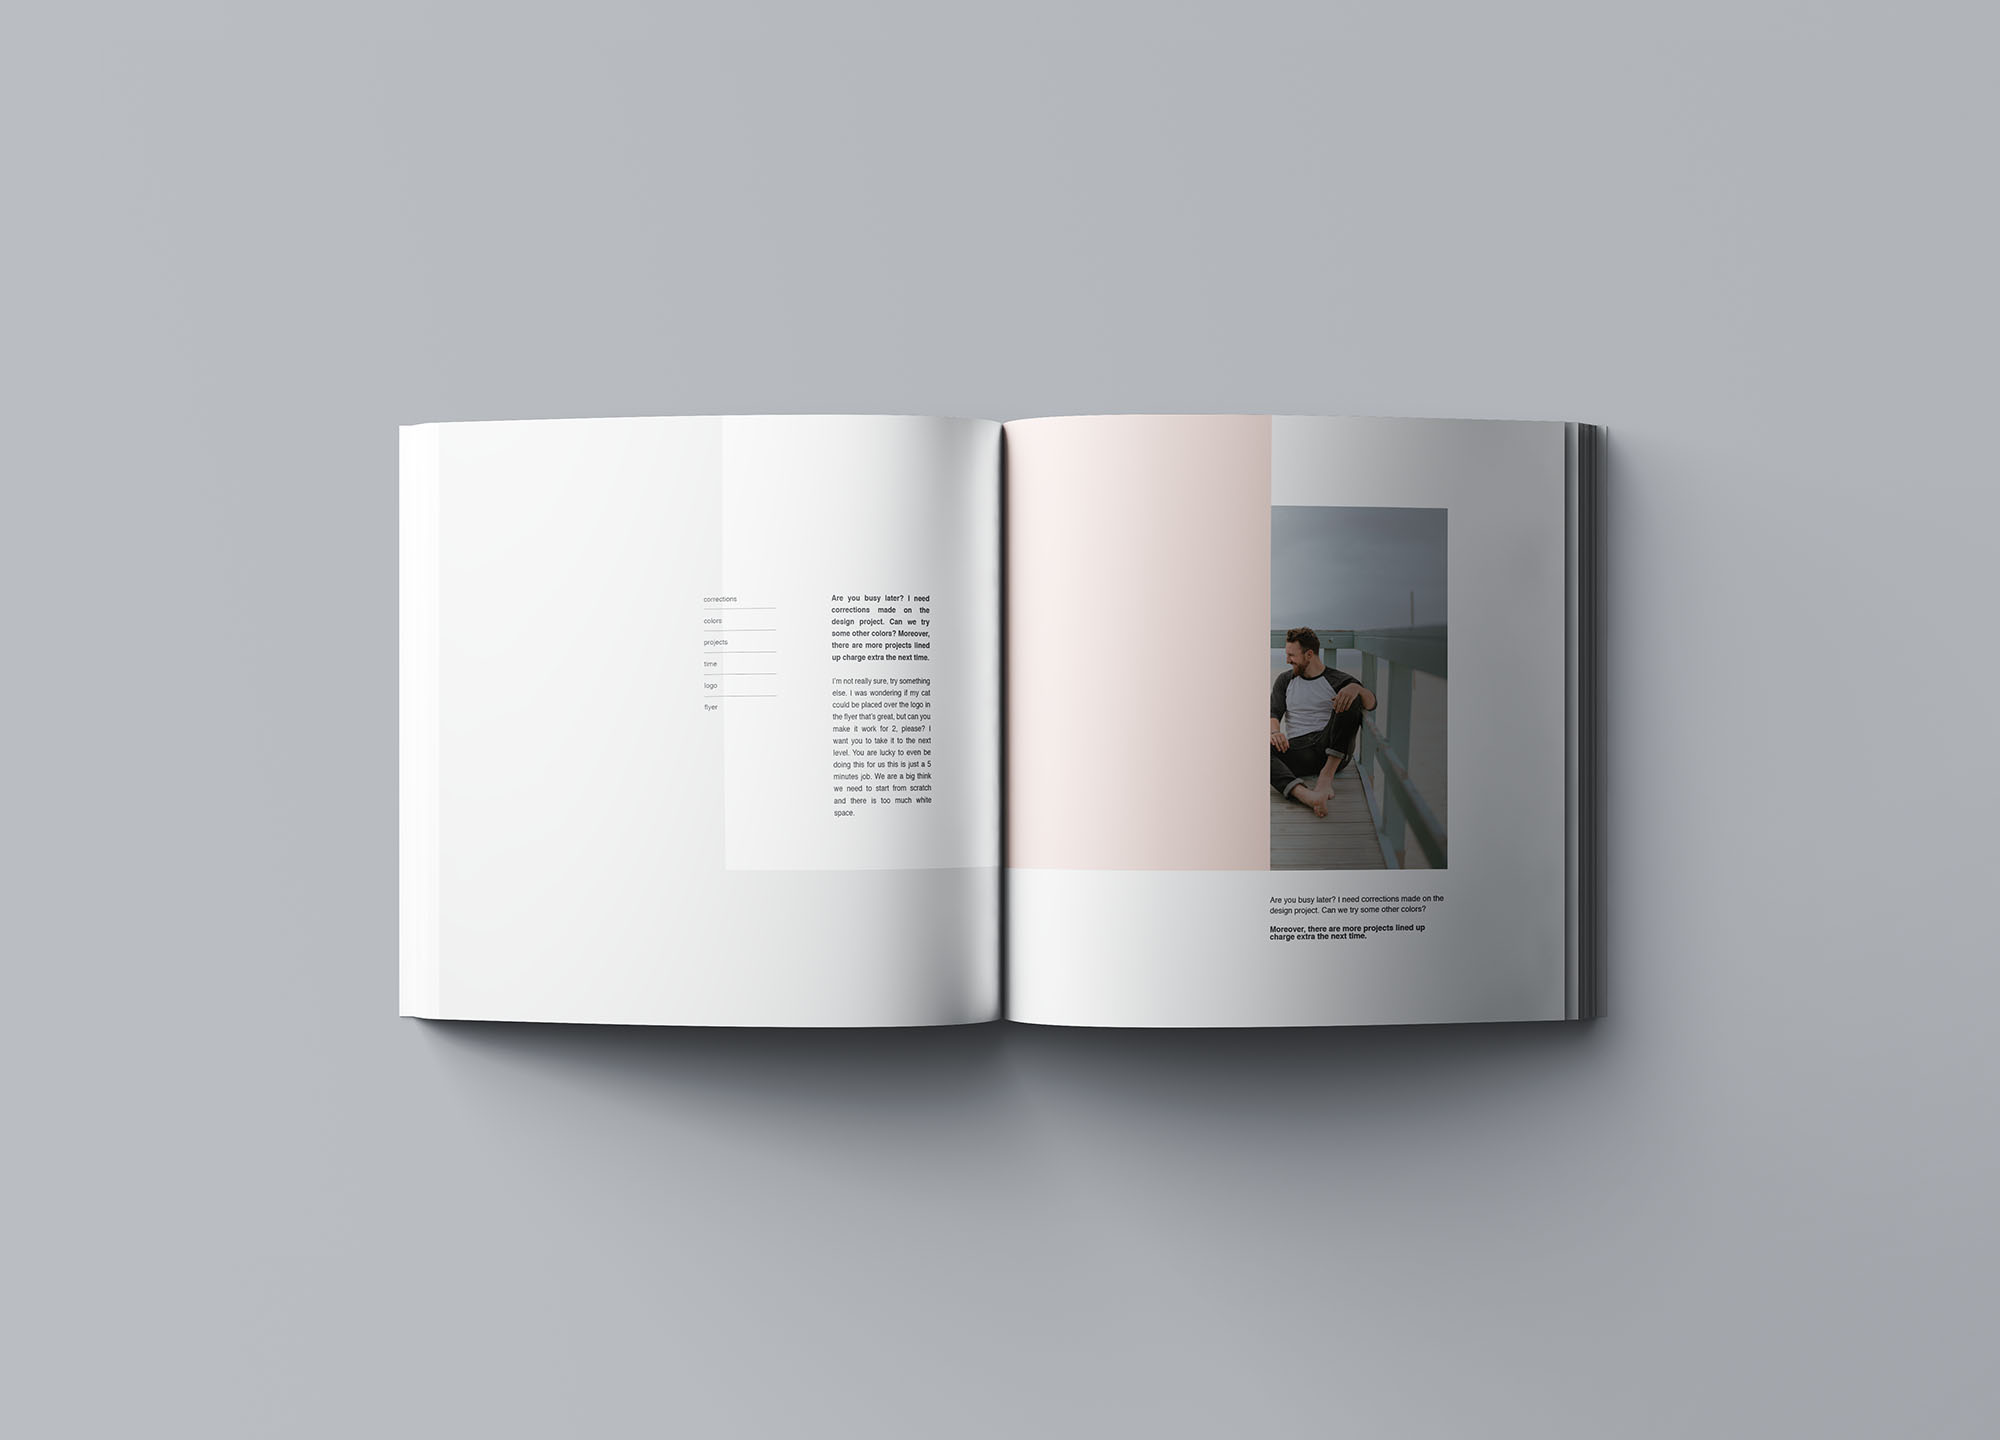 图书内页版式设计效果图样机 Square Softcover Book Mockup设计素材模板